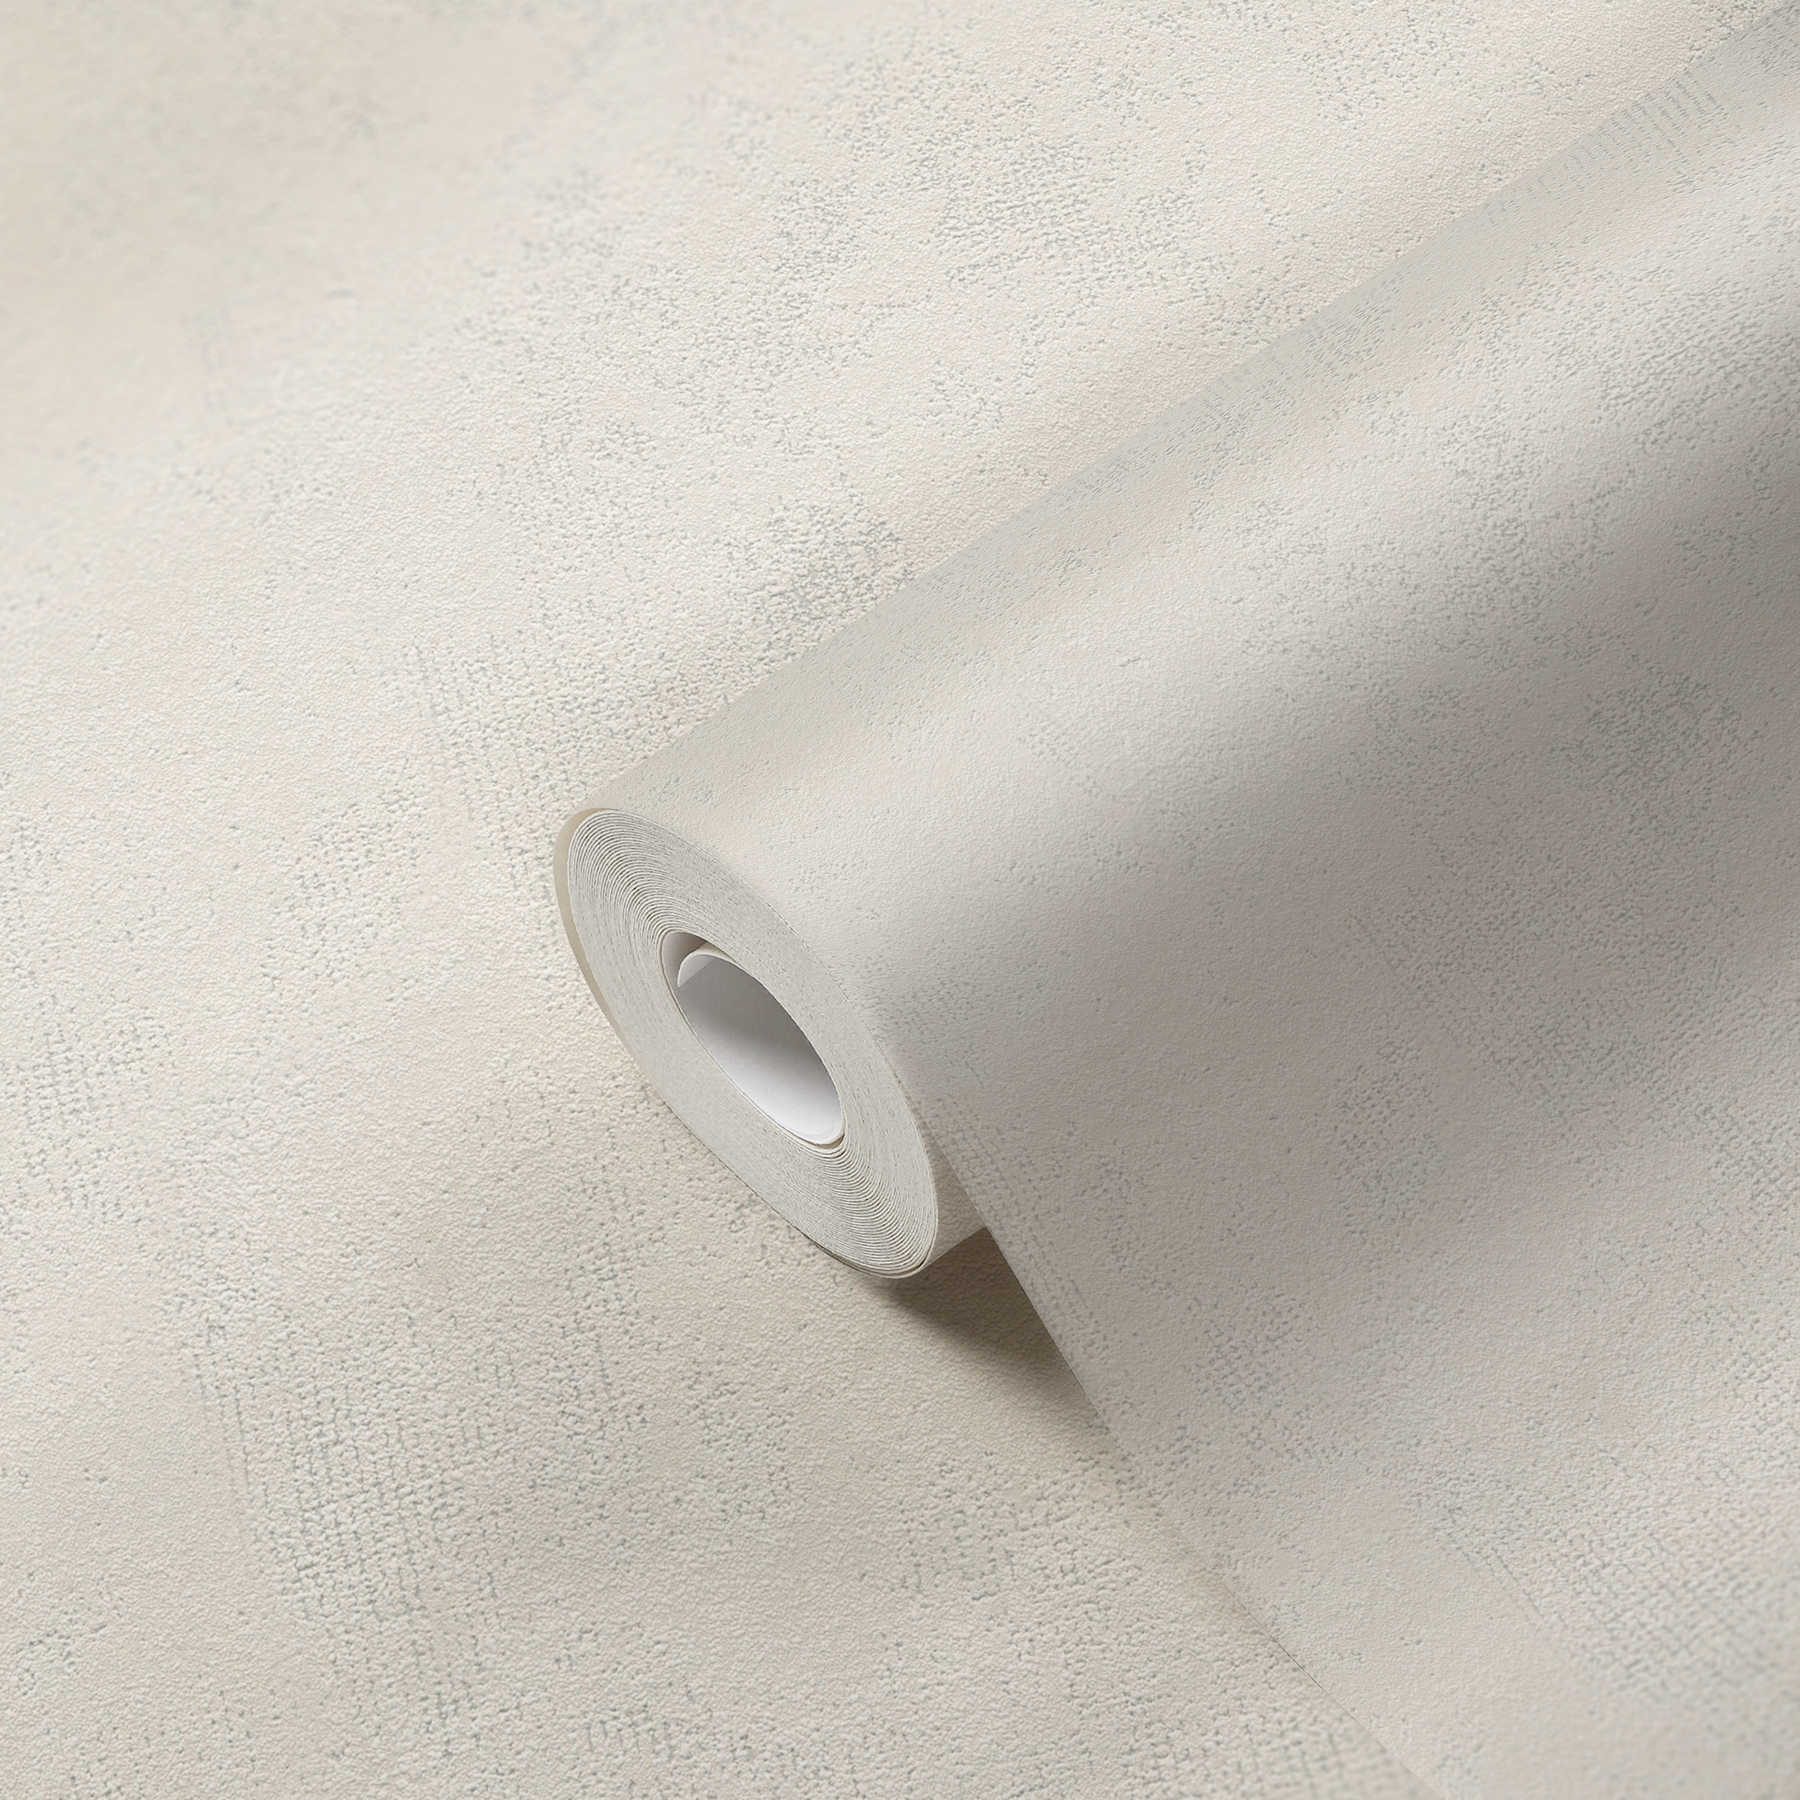             Papel pintado de aspecto usado no tejido con óptica de yeso con sombreado de color - crema
        